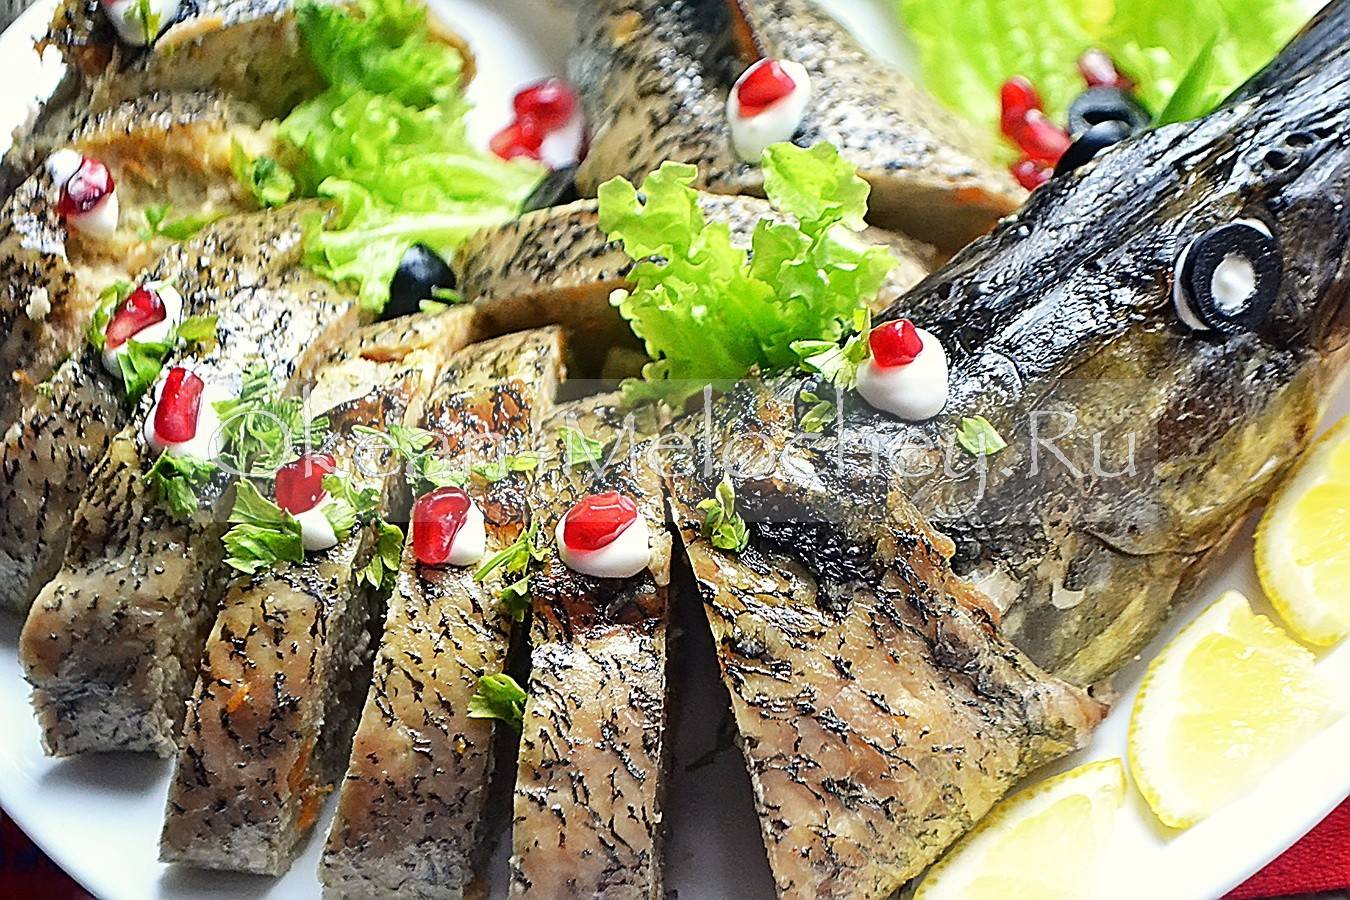 Рыба в духовке, фаршированная гречкой - любимый рецепт, проверенный временем.